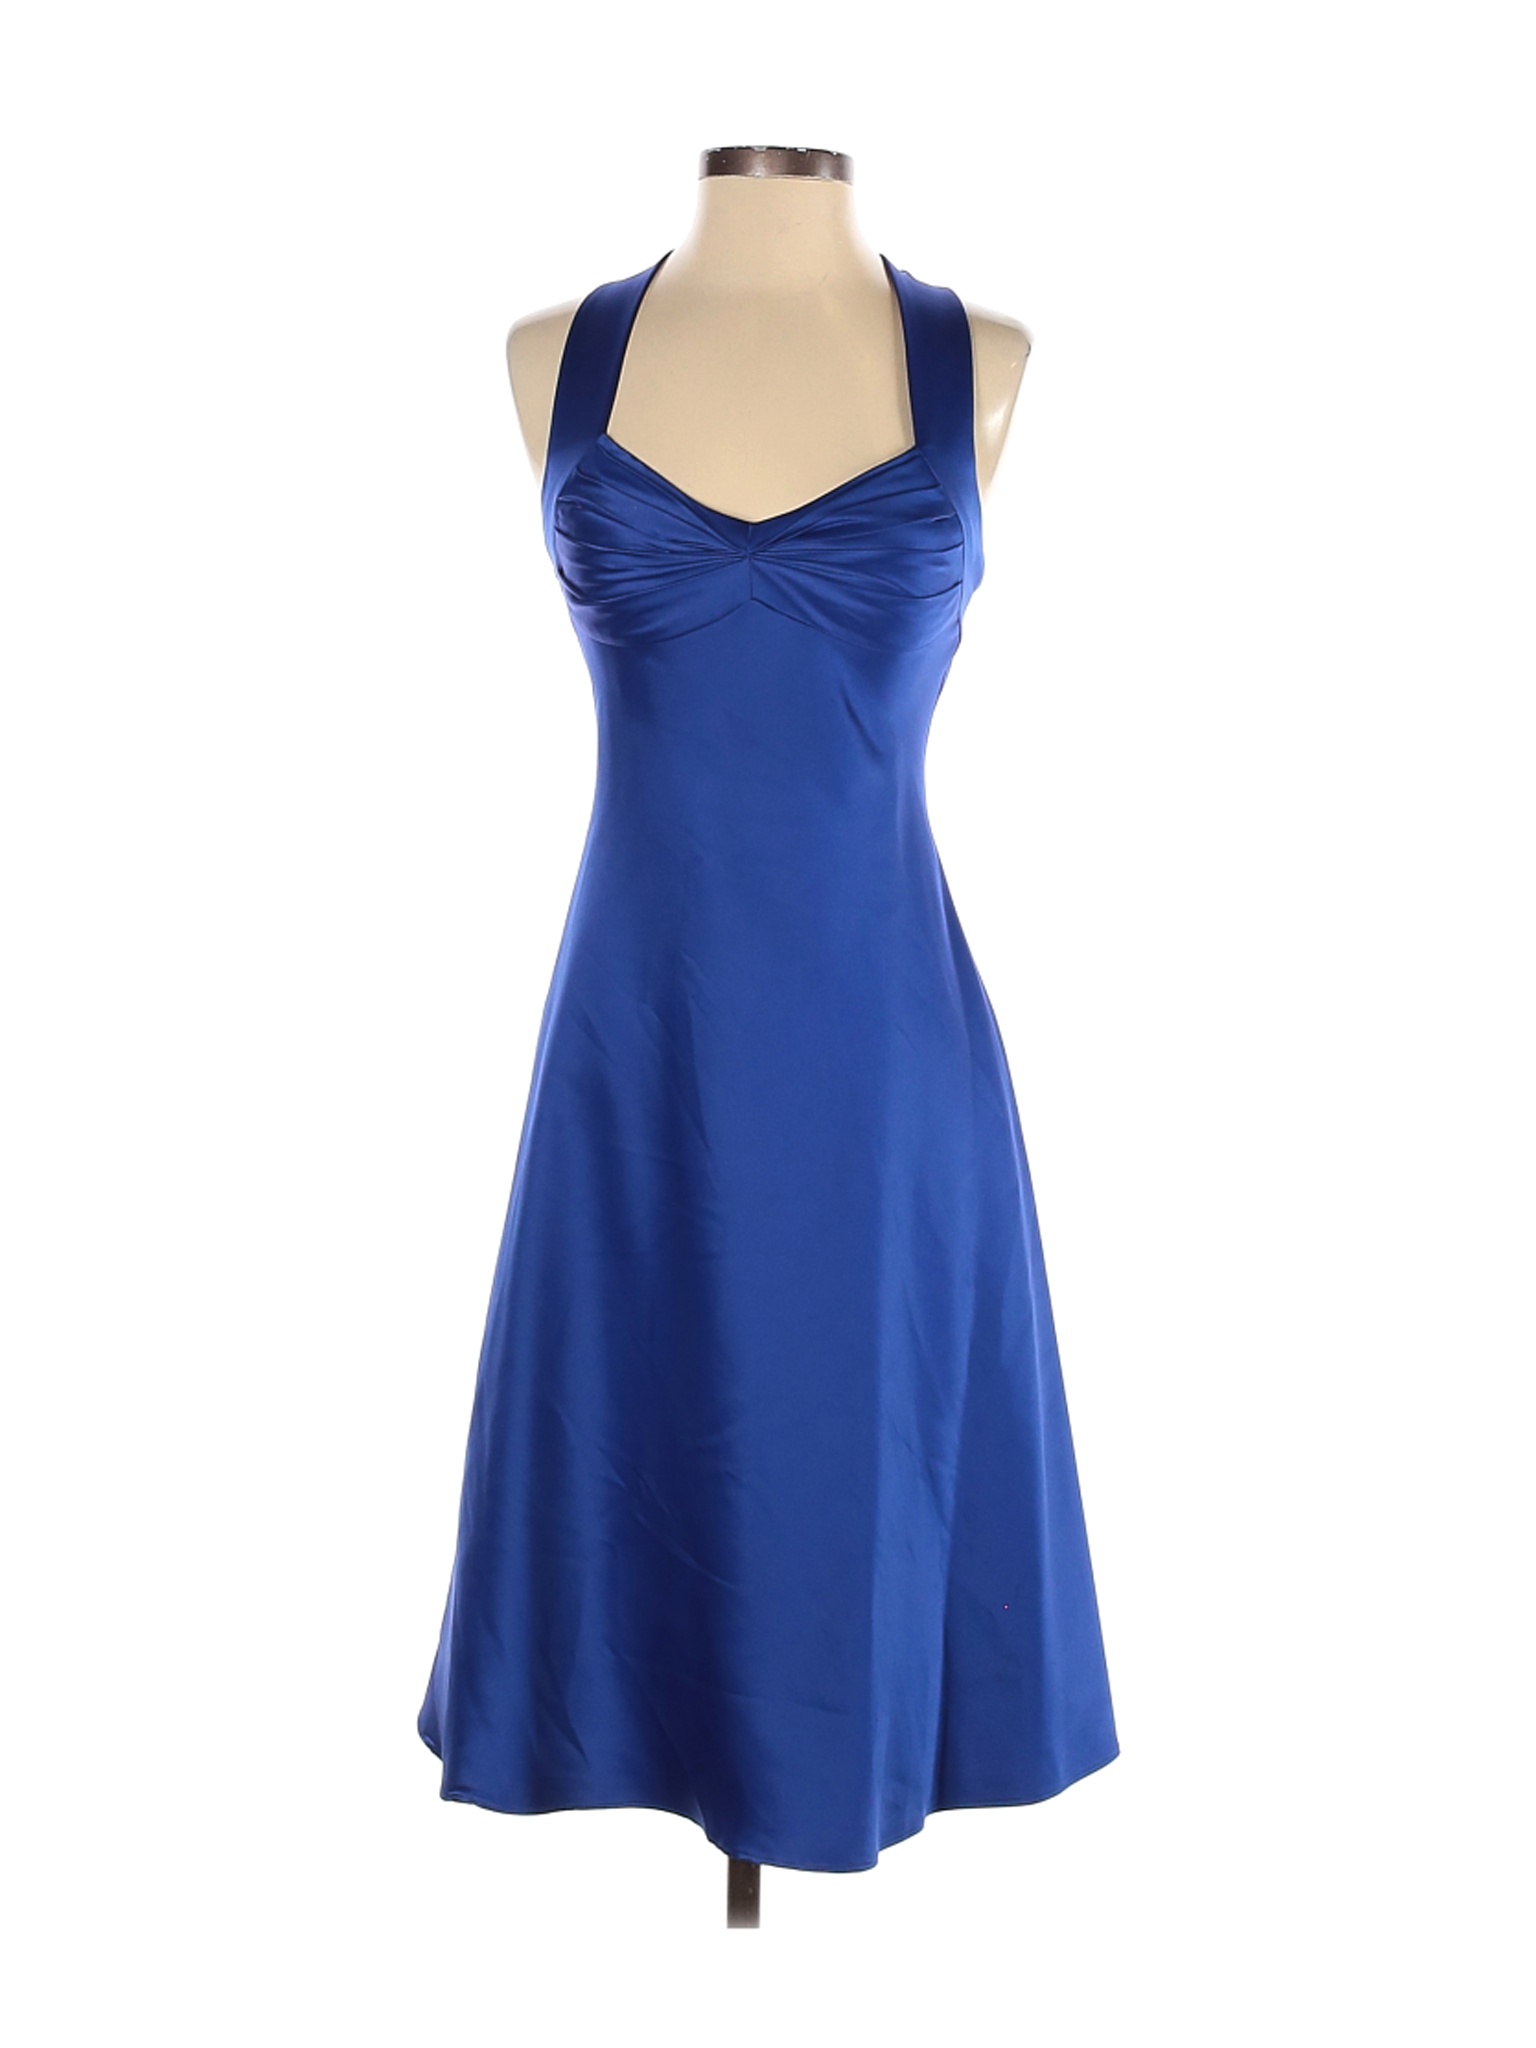 Calvin Klein Women Blue Cocktail Dress 2 | eBay